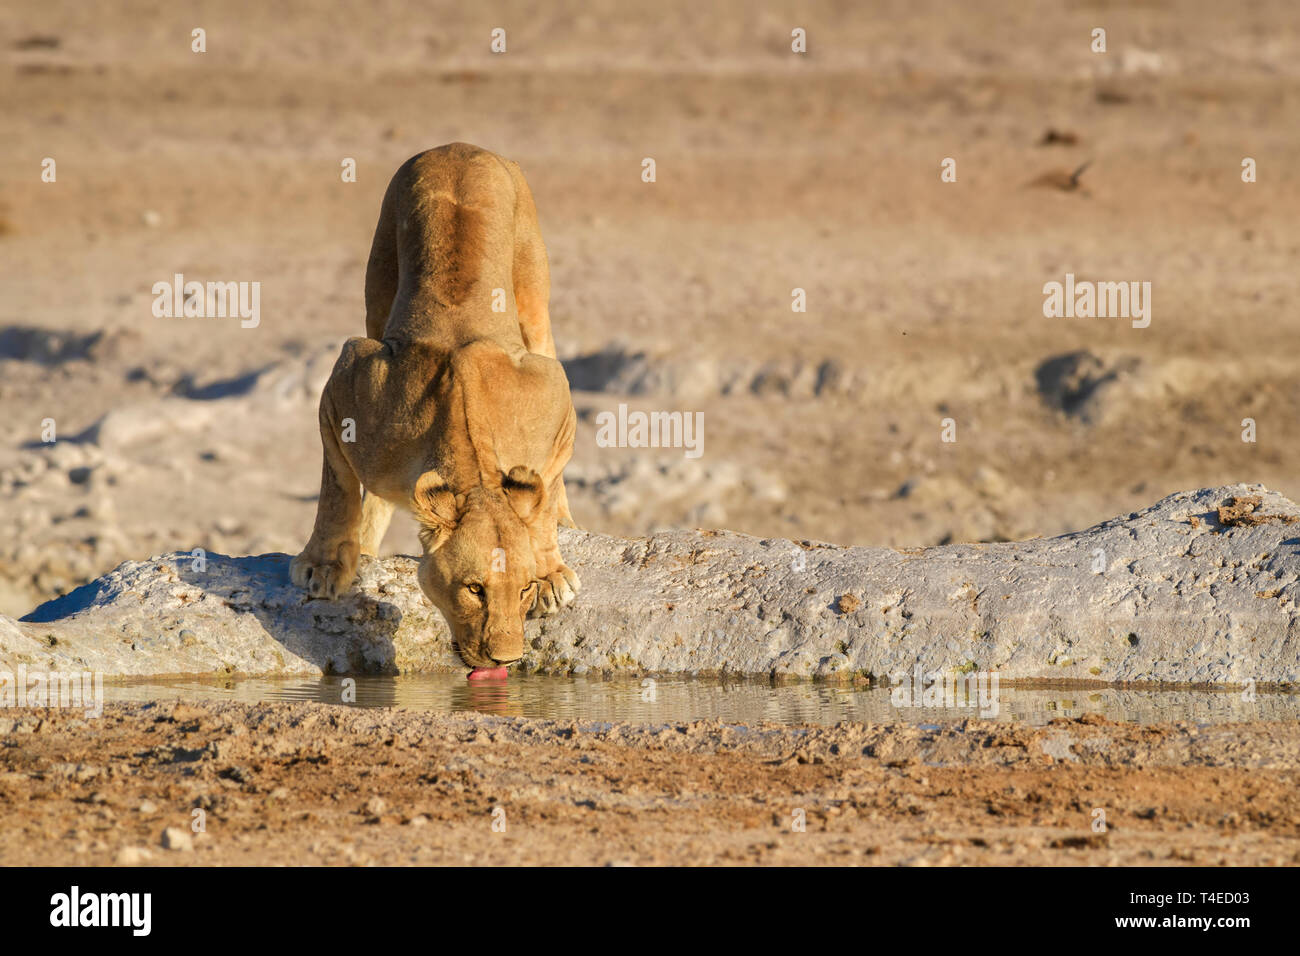 Lion - Panthera leo, iconic animal from African savannas, Etosha national park, Namibia. Stock Photo